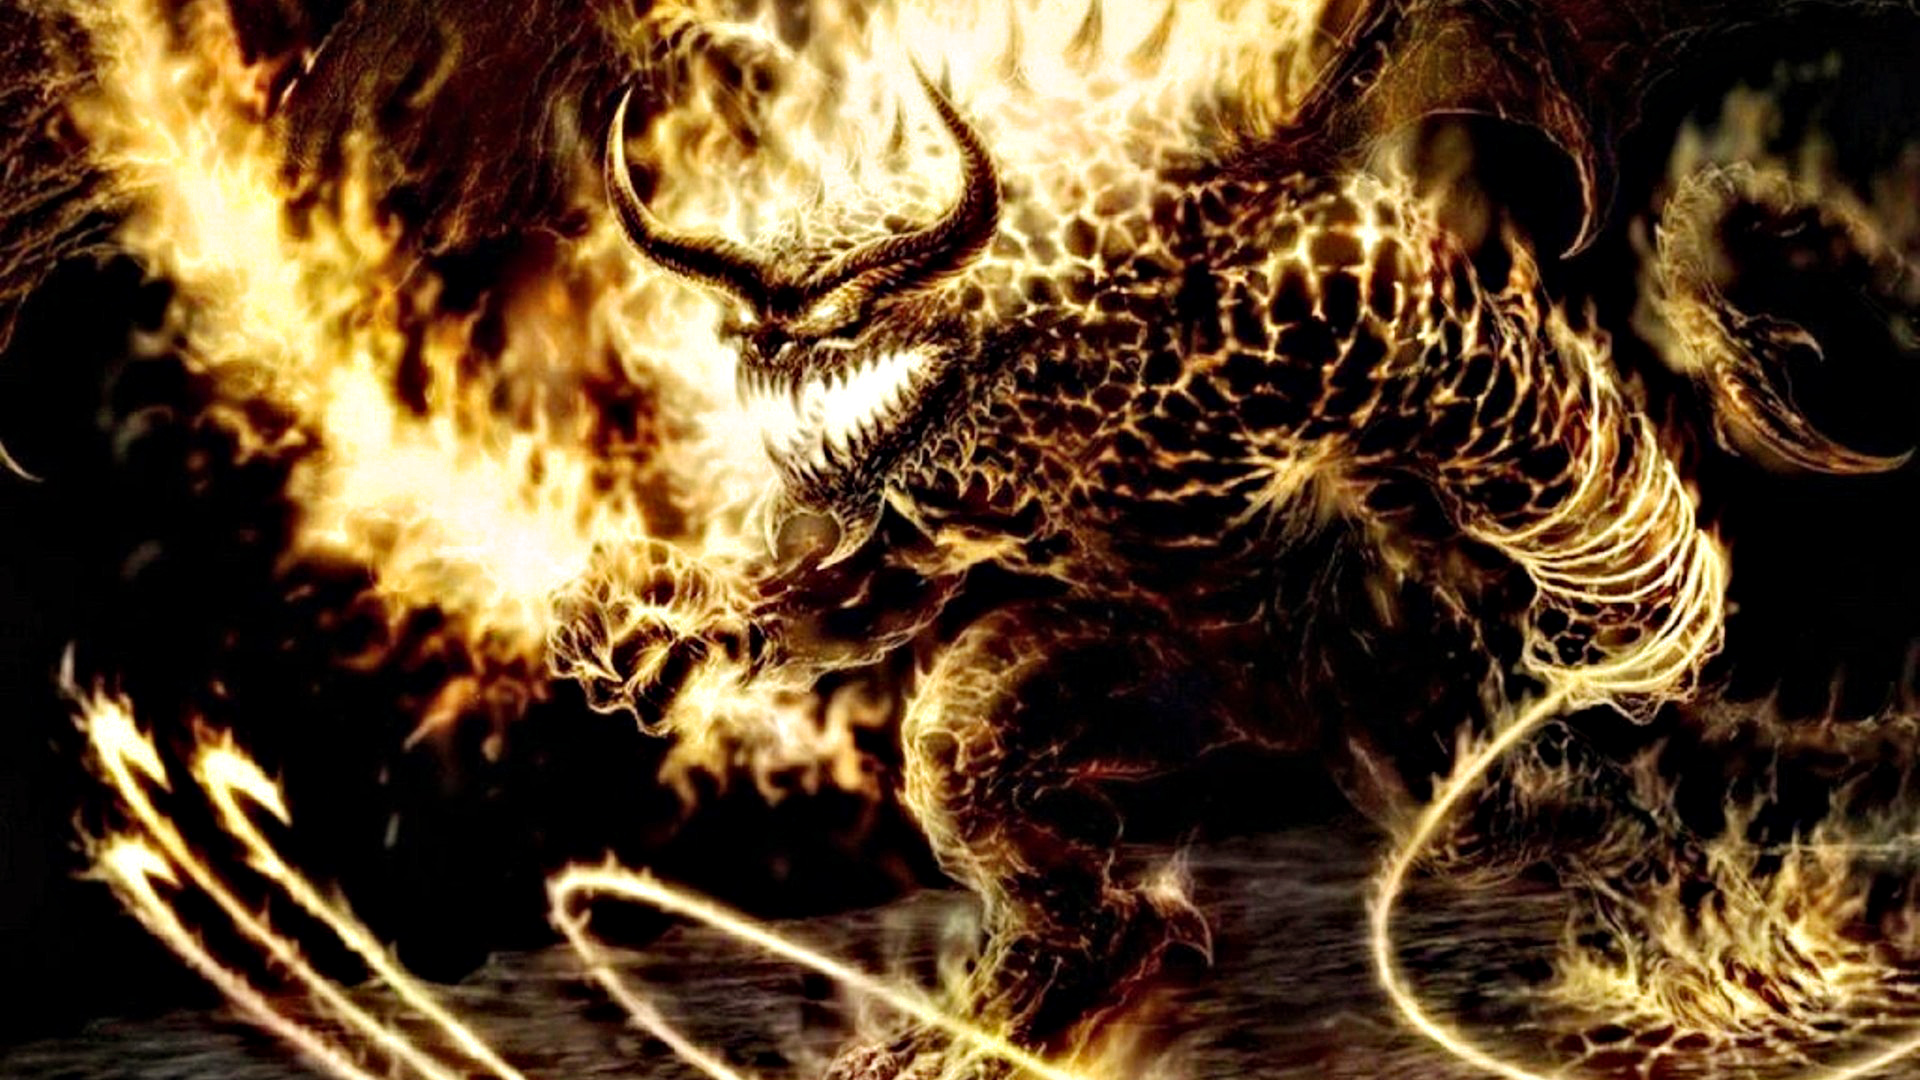 Bull Devil Demon Of Hell Wallpaper Hd 3219 Wallpaper - Balrog Fantasy - HD Wallpaper 